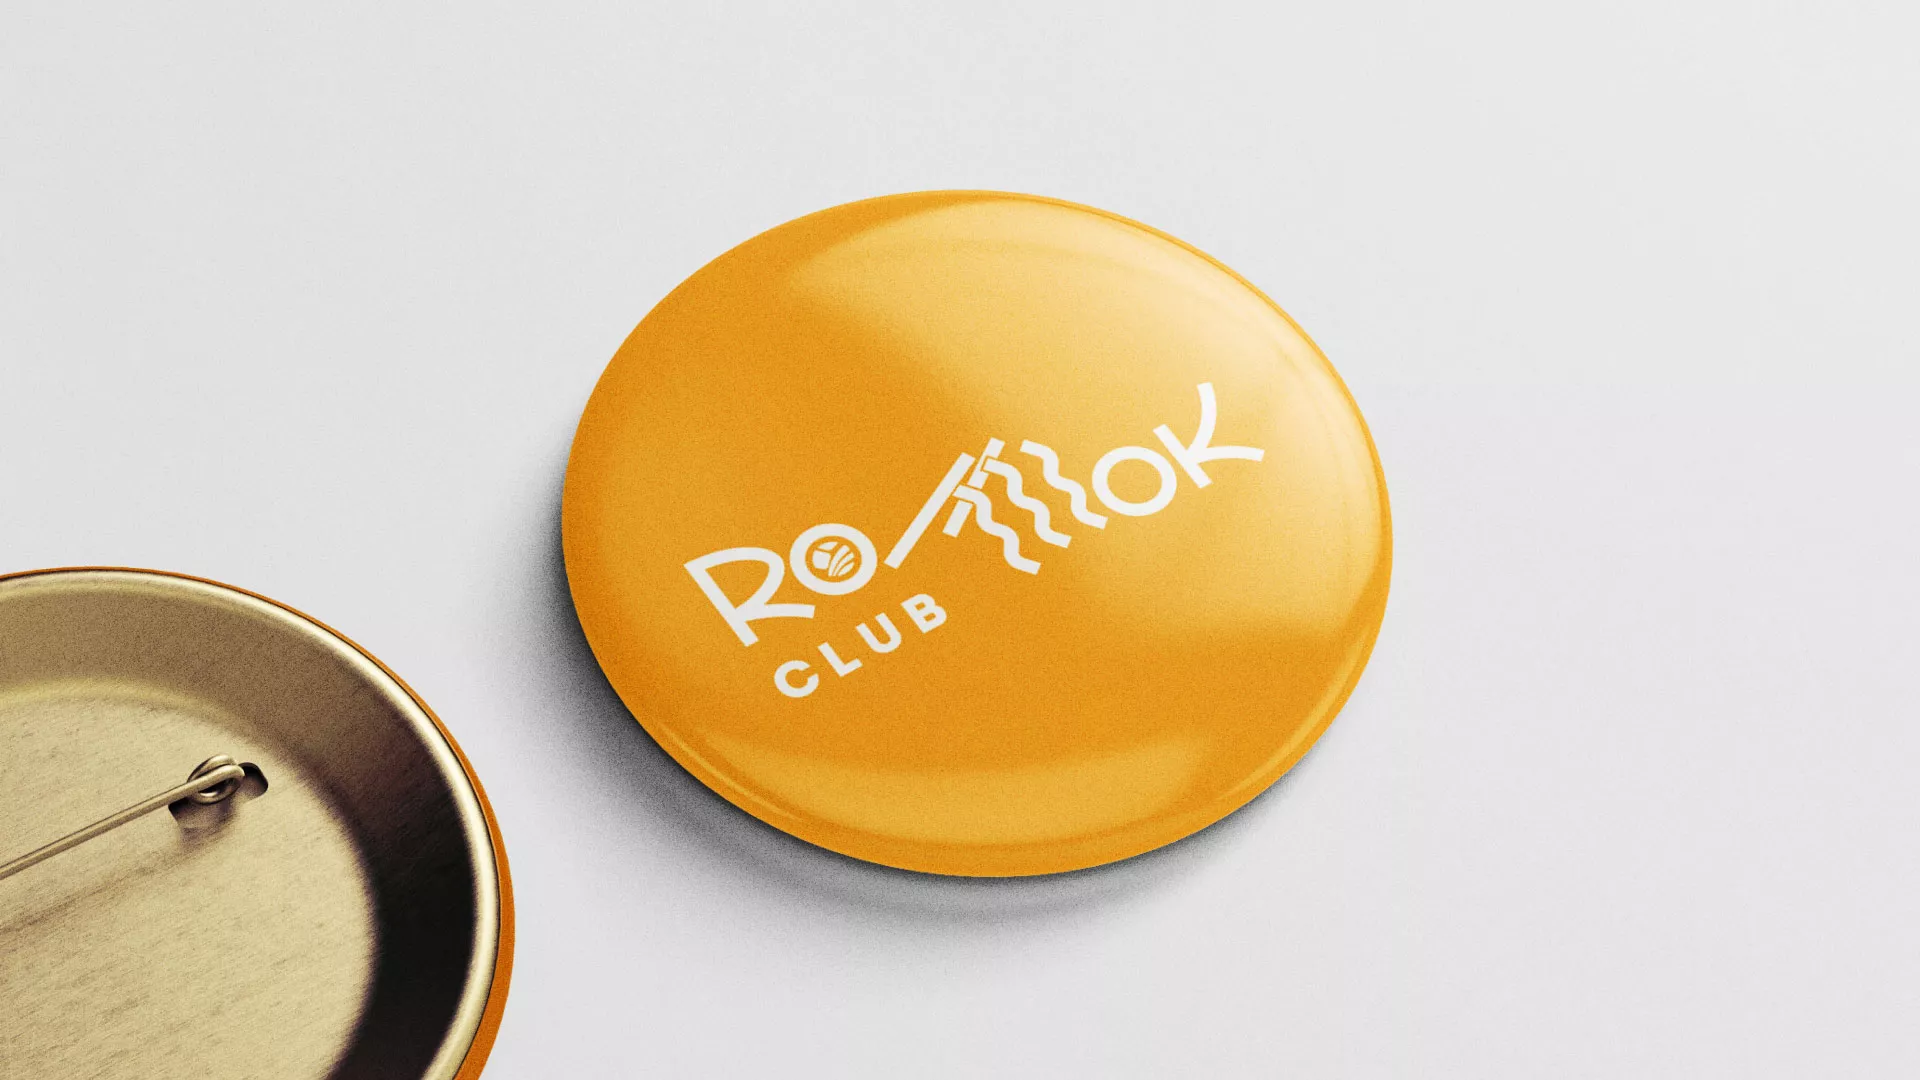 Создание логотипа суши-бара «Roll Wok Club» в Рузаевке